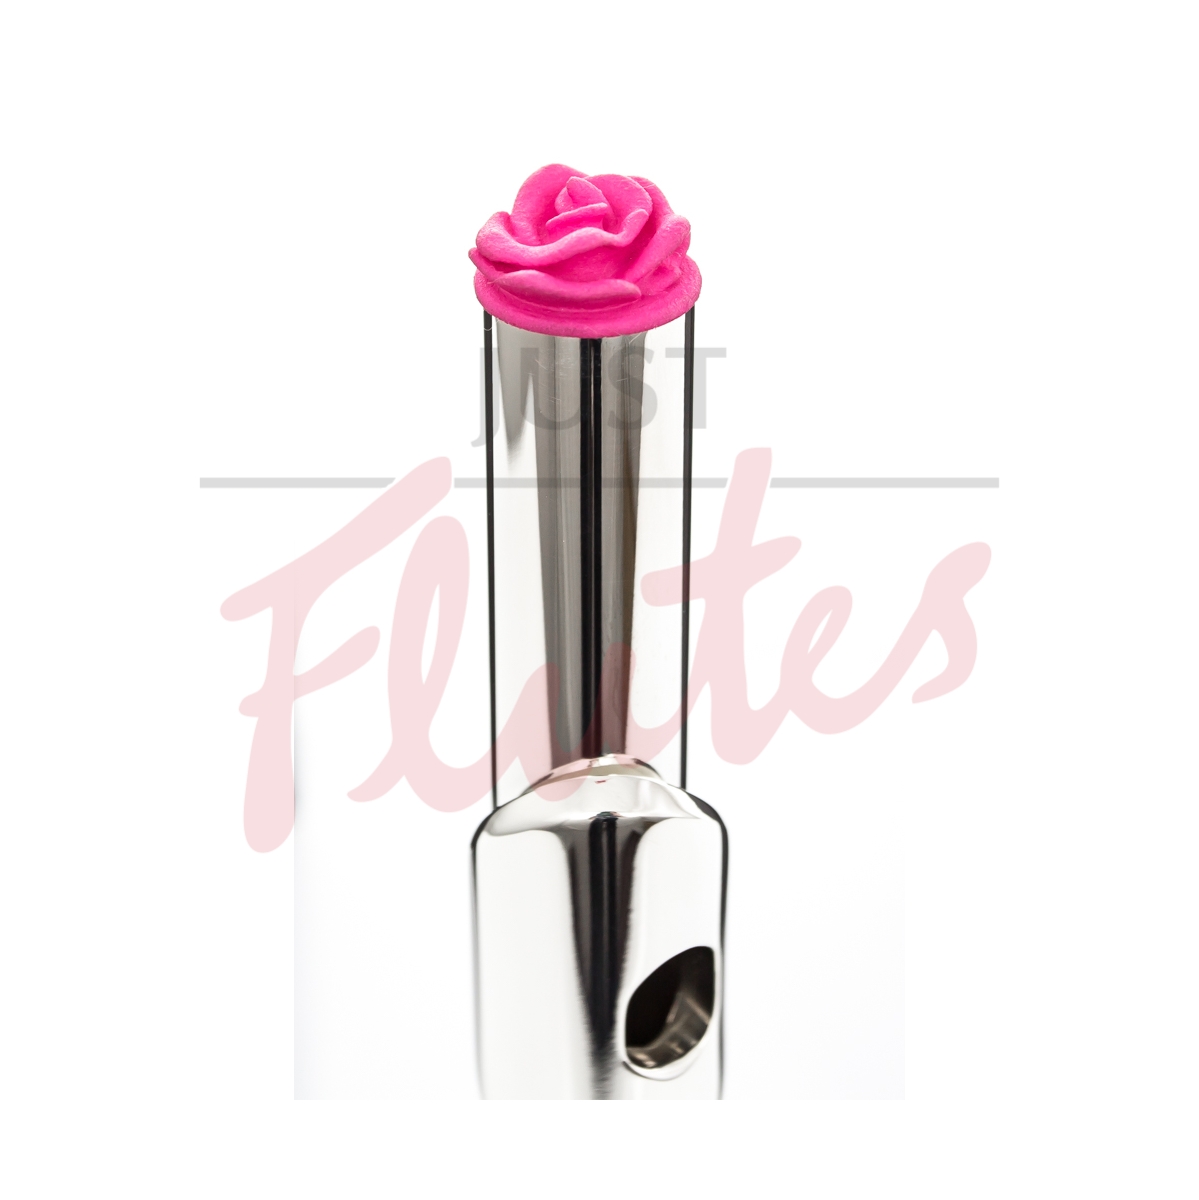 Flutealot Decorative Flute Crown, Pink Rose